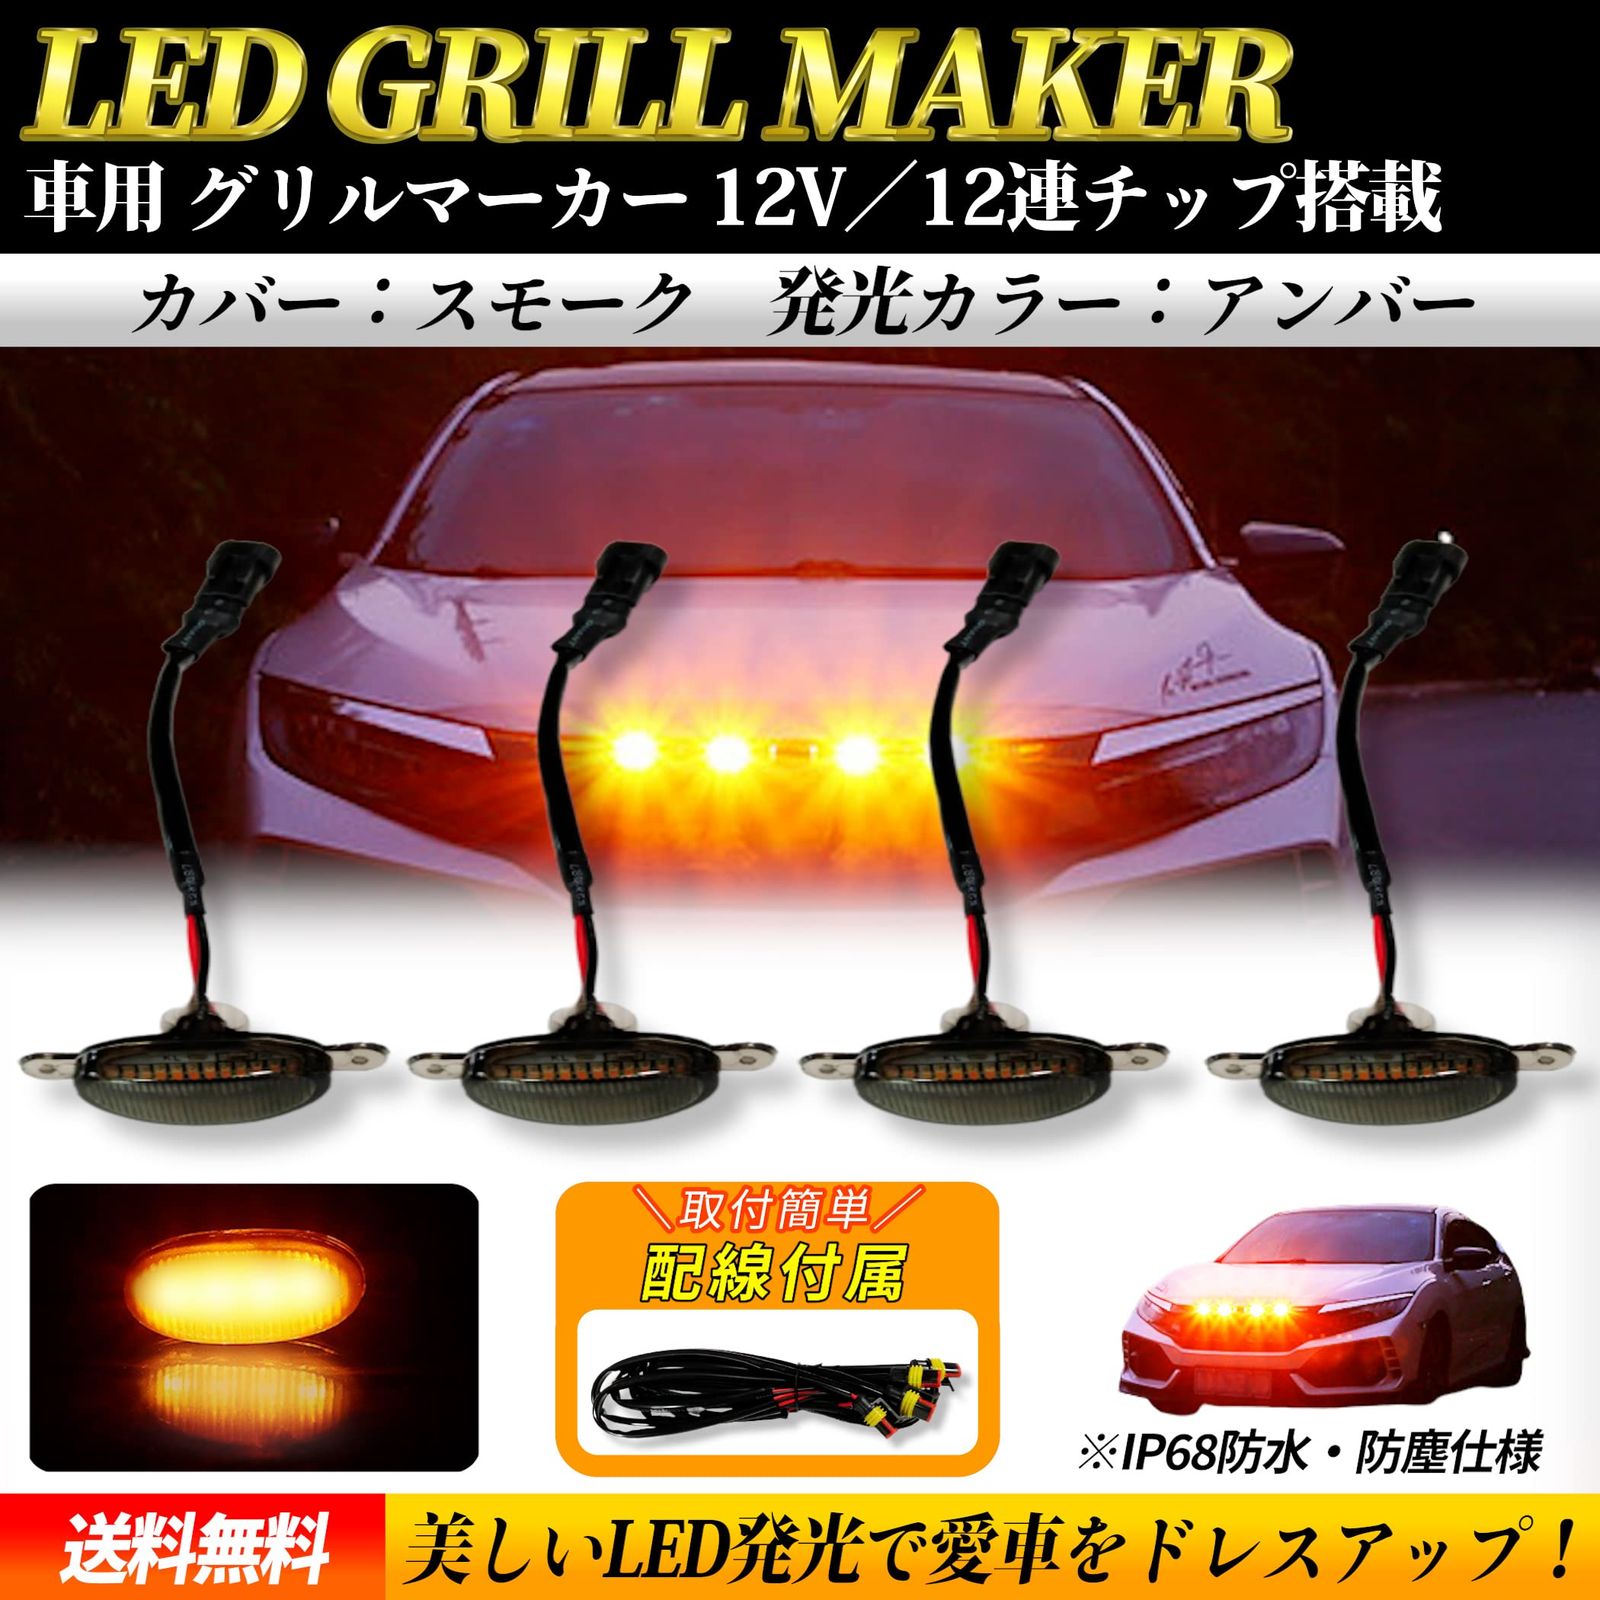 Lezalic LED グリルランプ (アンバー スモークカバー) 車用 マーカー デイライト 警告灯 カスタム サイドマーカー 汎用 アクセサリー  (アンバー スモークカバー) [アンバー スモークカバー] - メルカリ